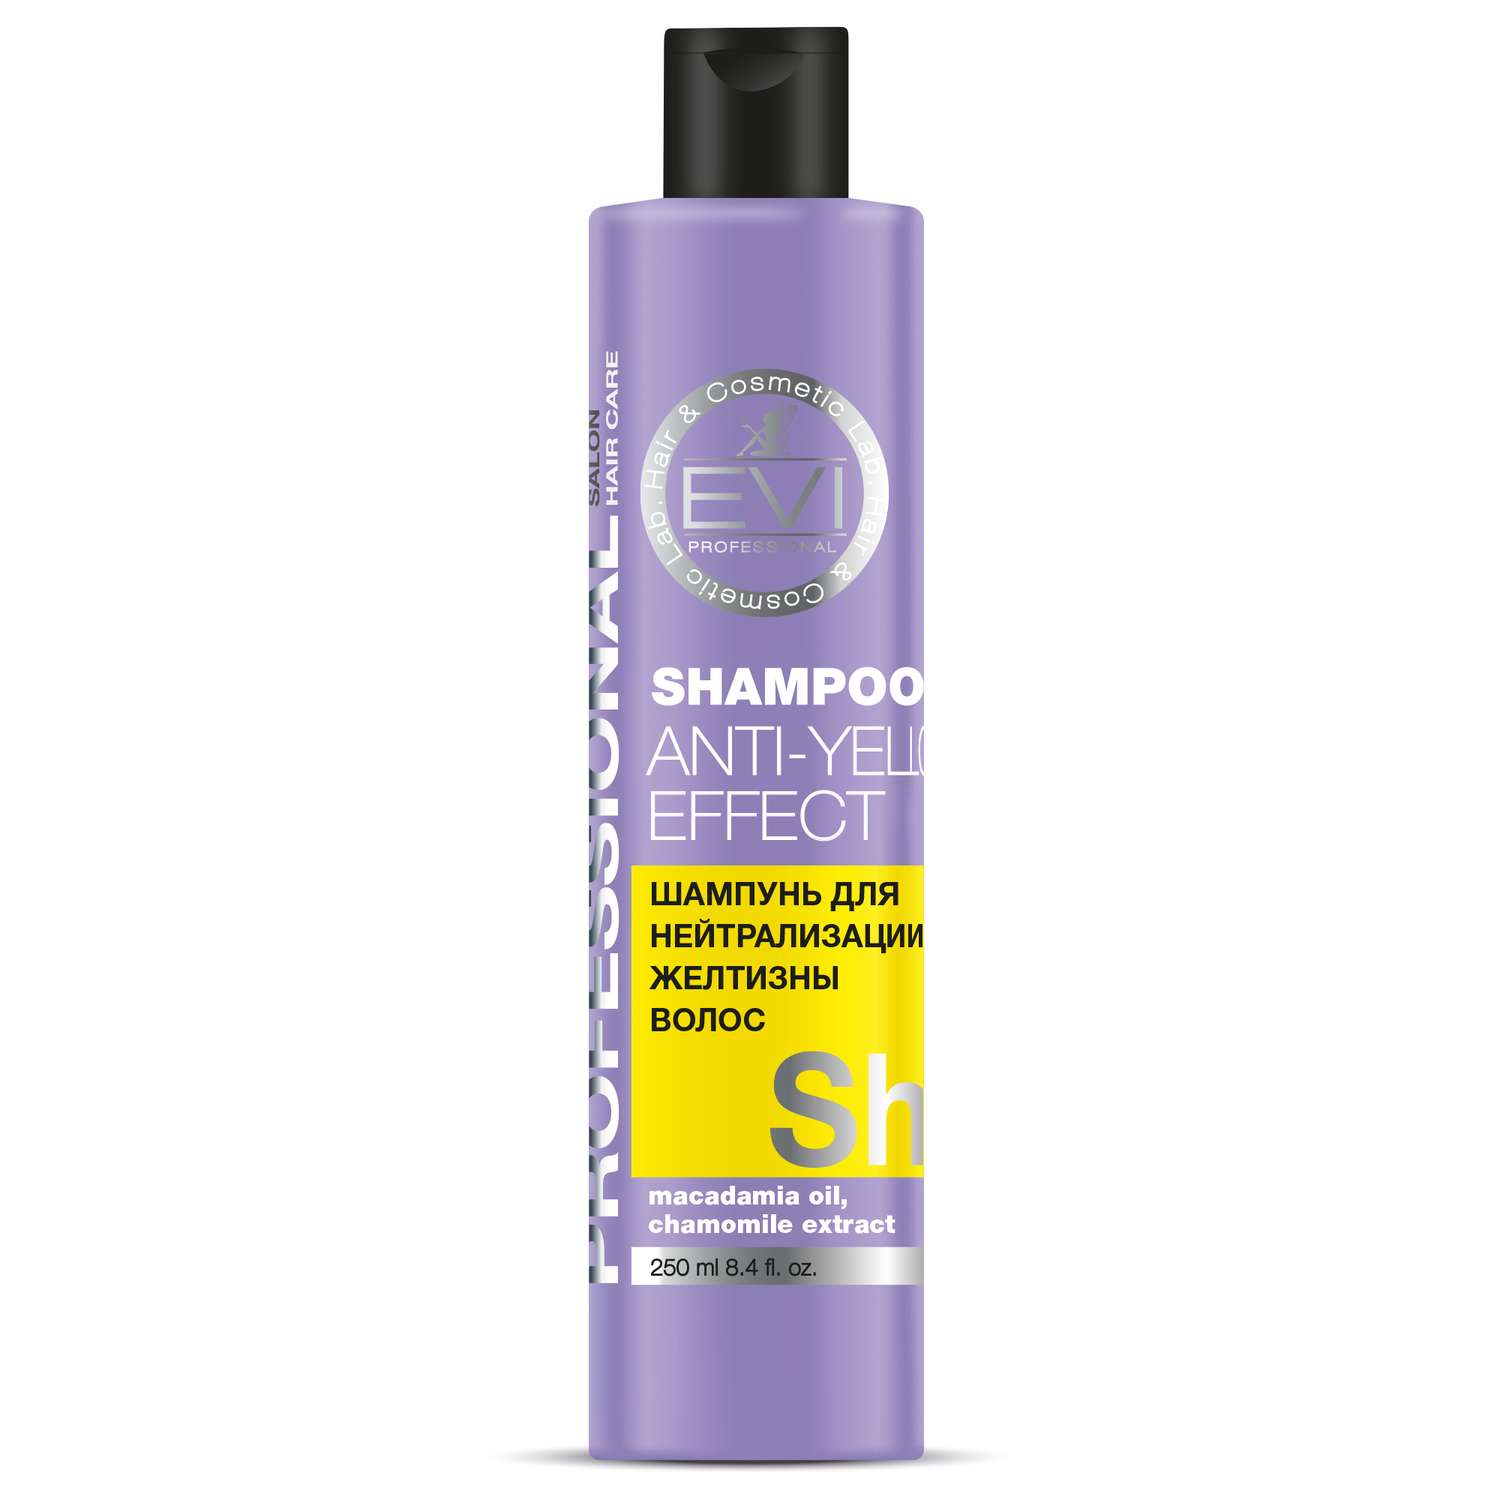 Шампунь Evi Professional Серебристый для нейтрализации желтизны волос - фото 1